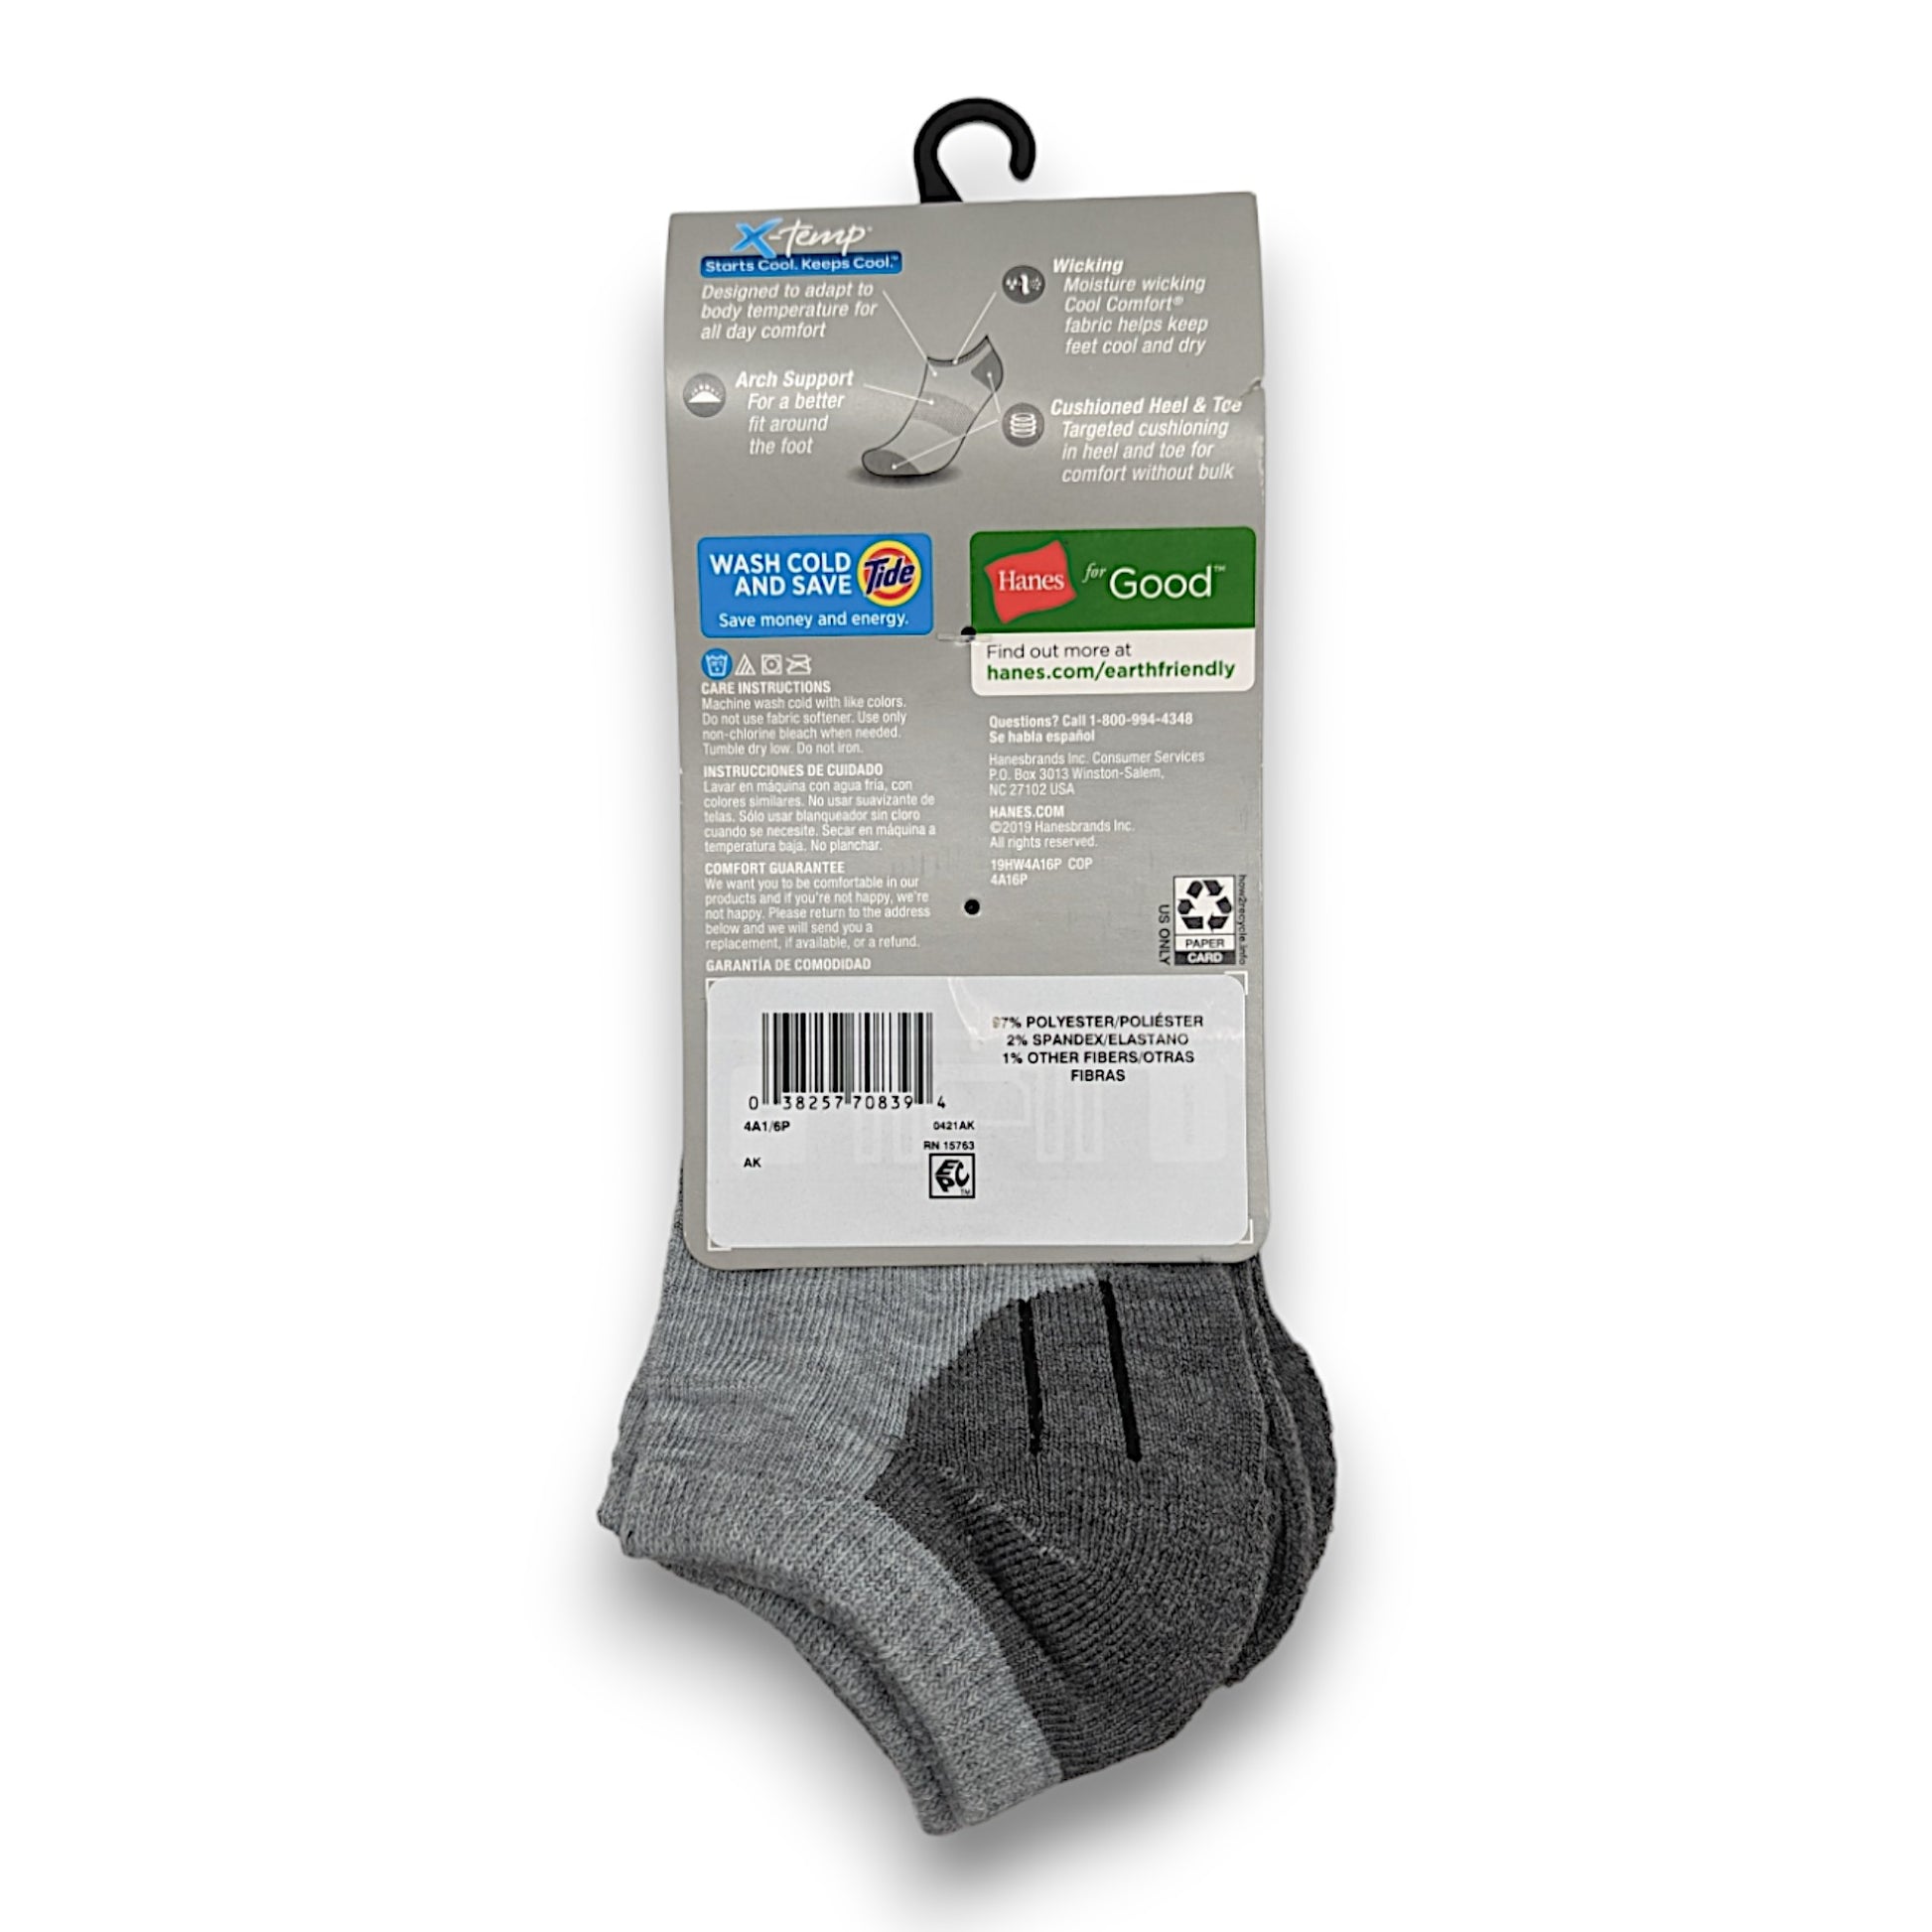 Hanes Women's Extended Size Socks